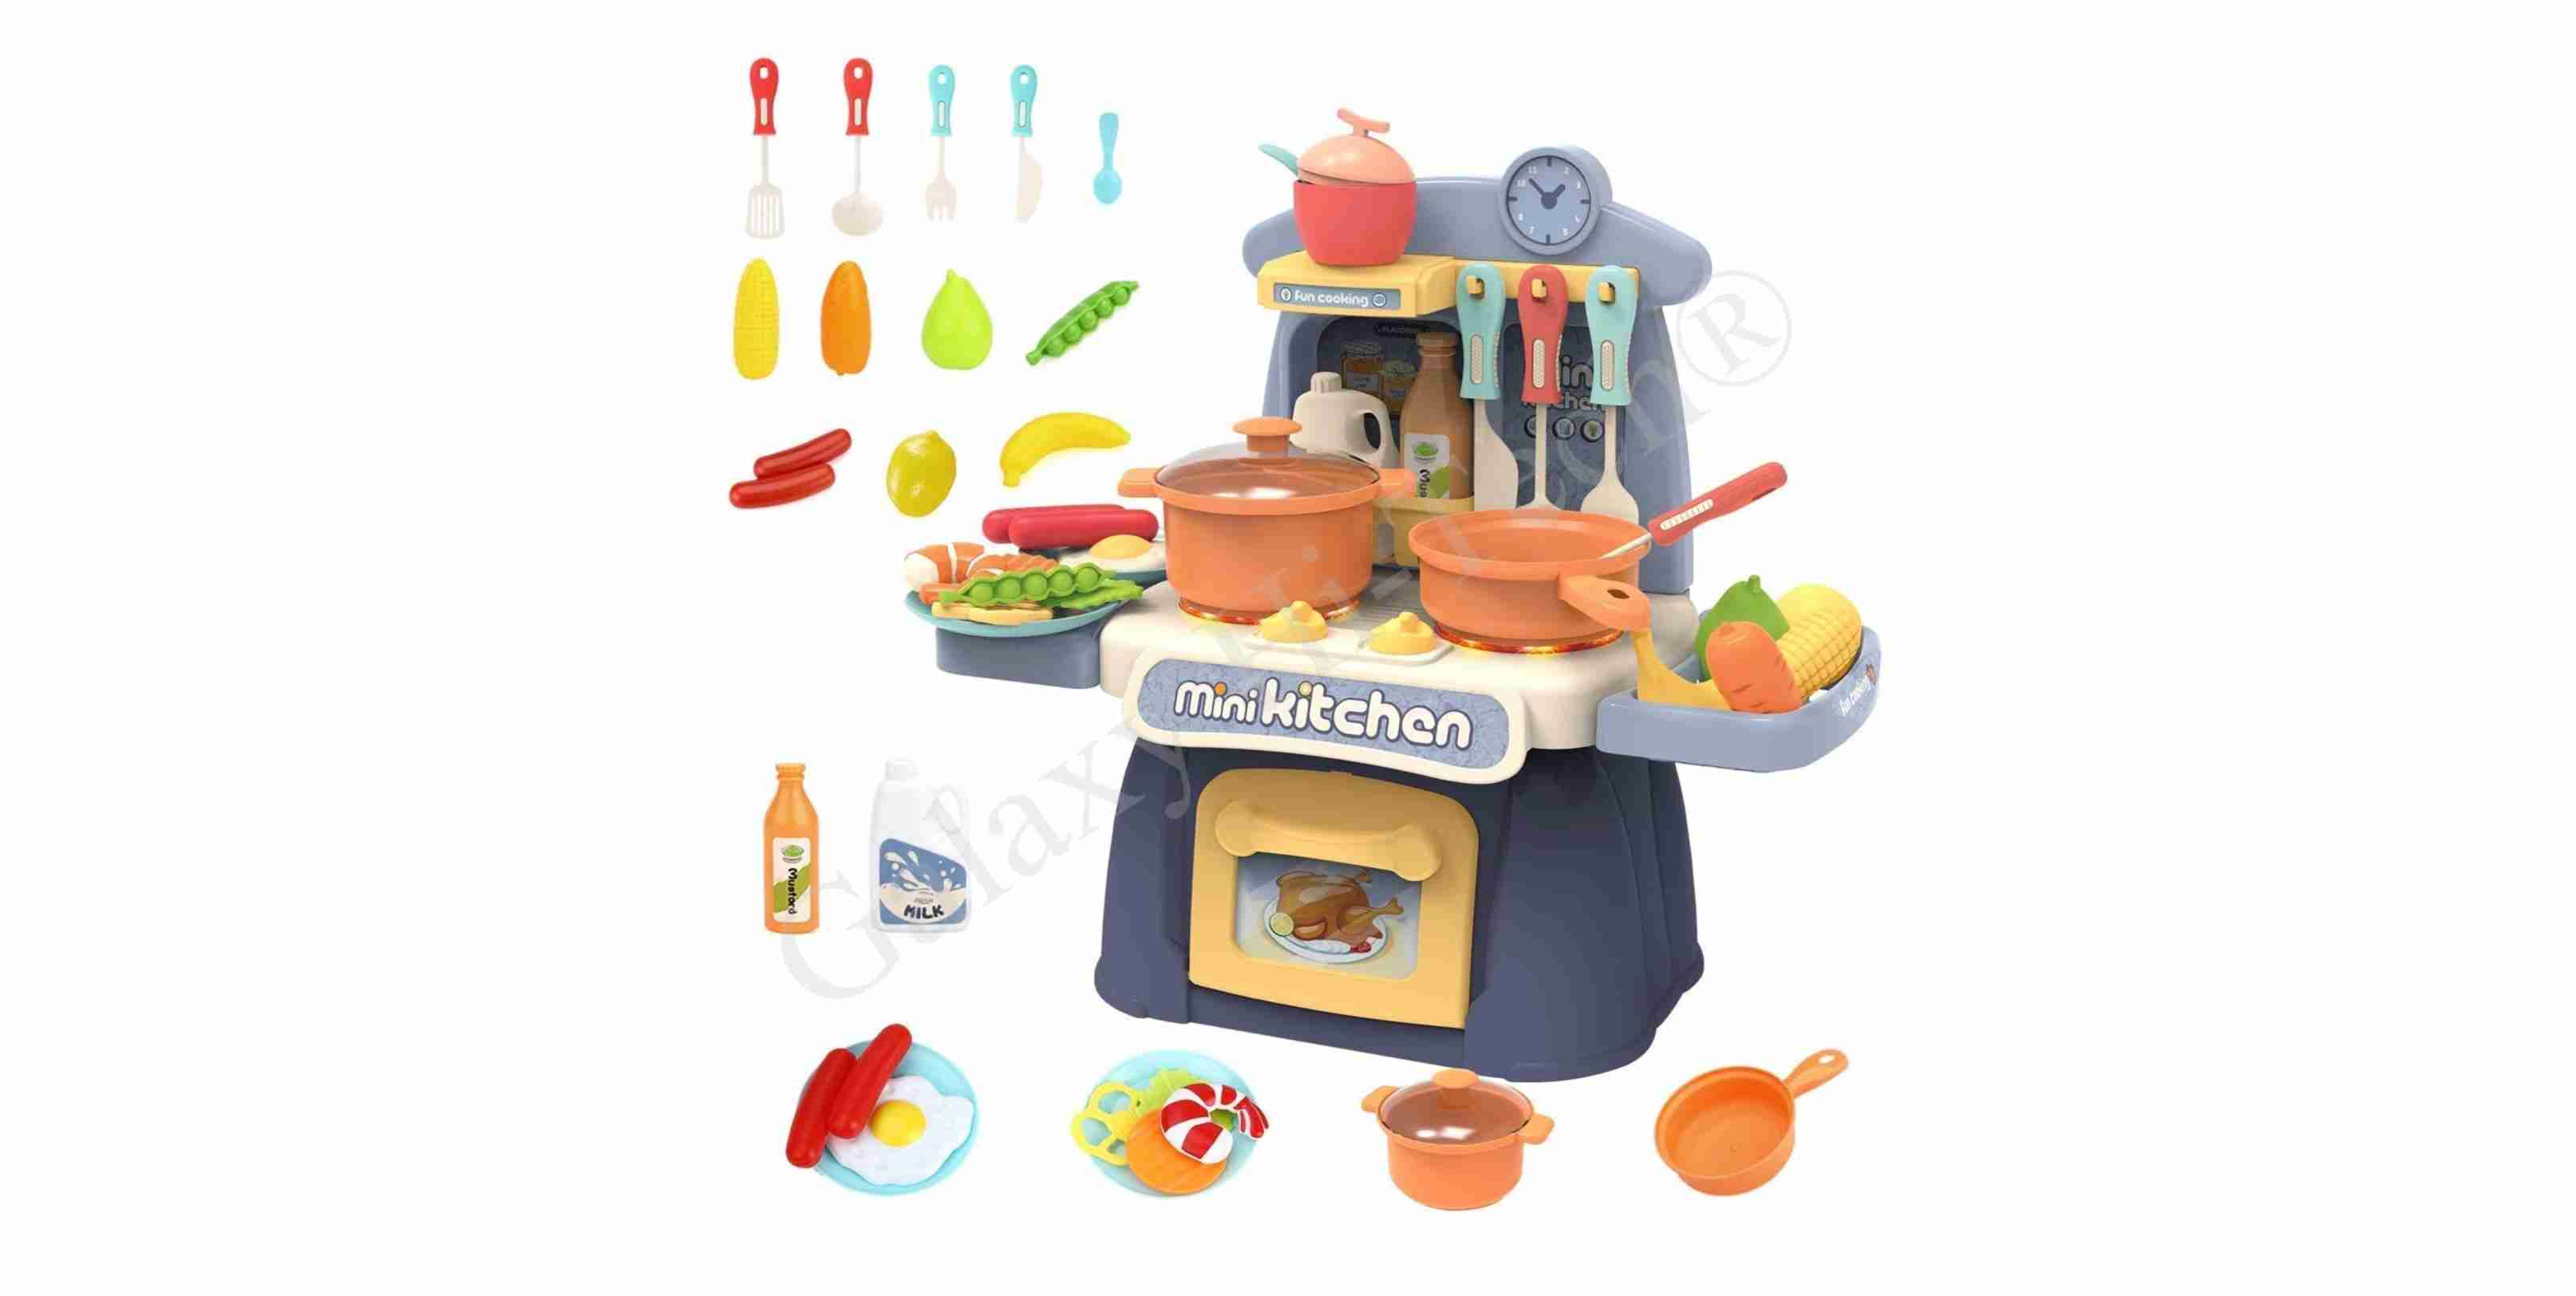 Mini Kitchen Toy Set